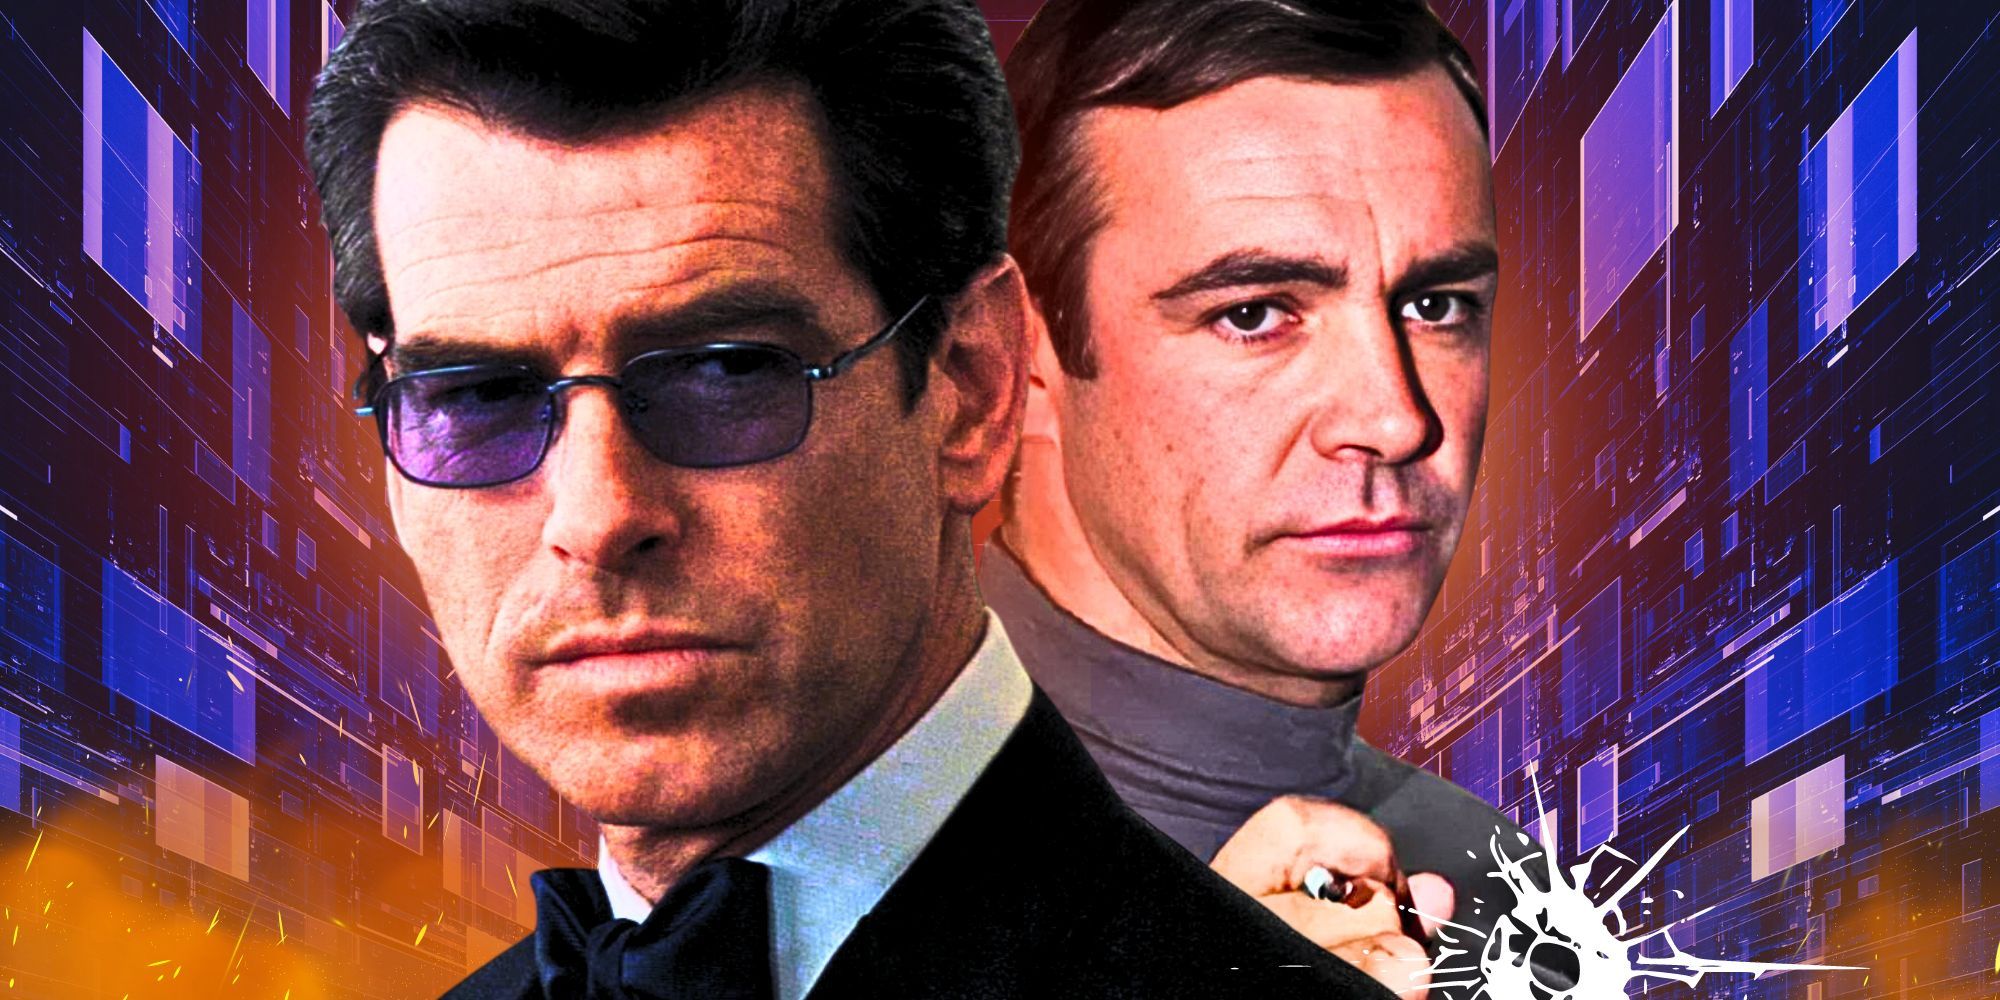 Niestandardowe zdjęcie przedstawiające Jamesa Bonda (Pierce Brosnan) w okularach rentgenowskich z filmu Świat to za mało i Jamesa Bonda (Sean Connery) używającego pistoletu papierosowego z filmu Żyje się tylko dwa razy.